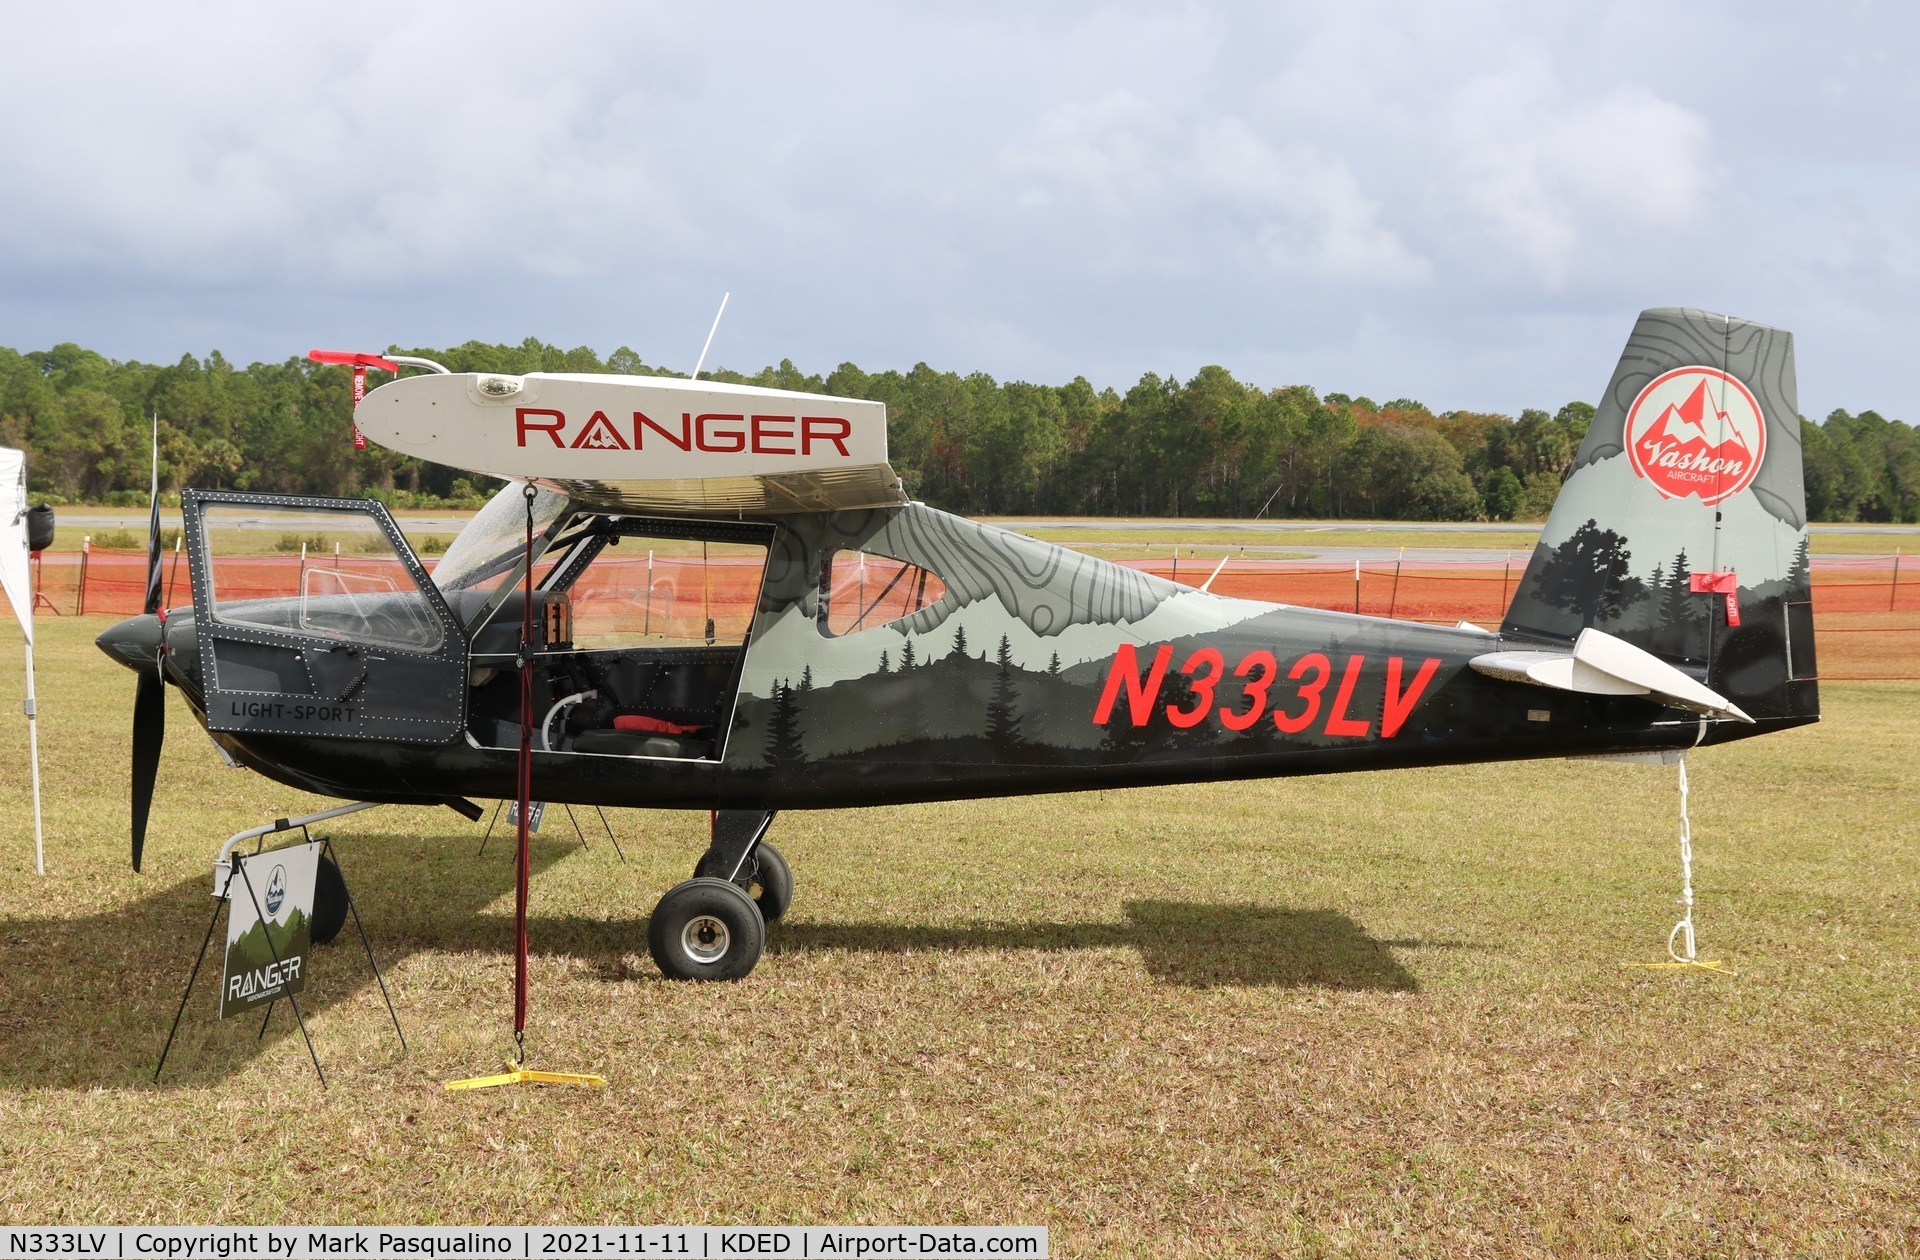 N333LV, 2019 Vashon Aircraft Ranger R7 C/N 10149, Vashon Aircraft Ranger R7